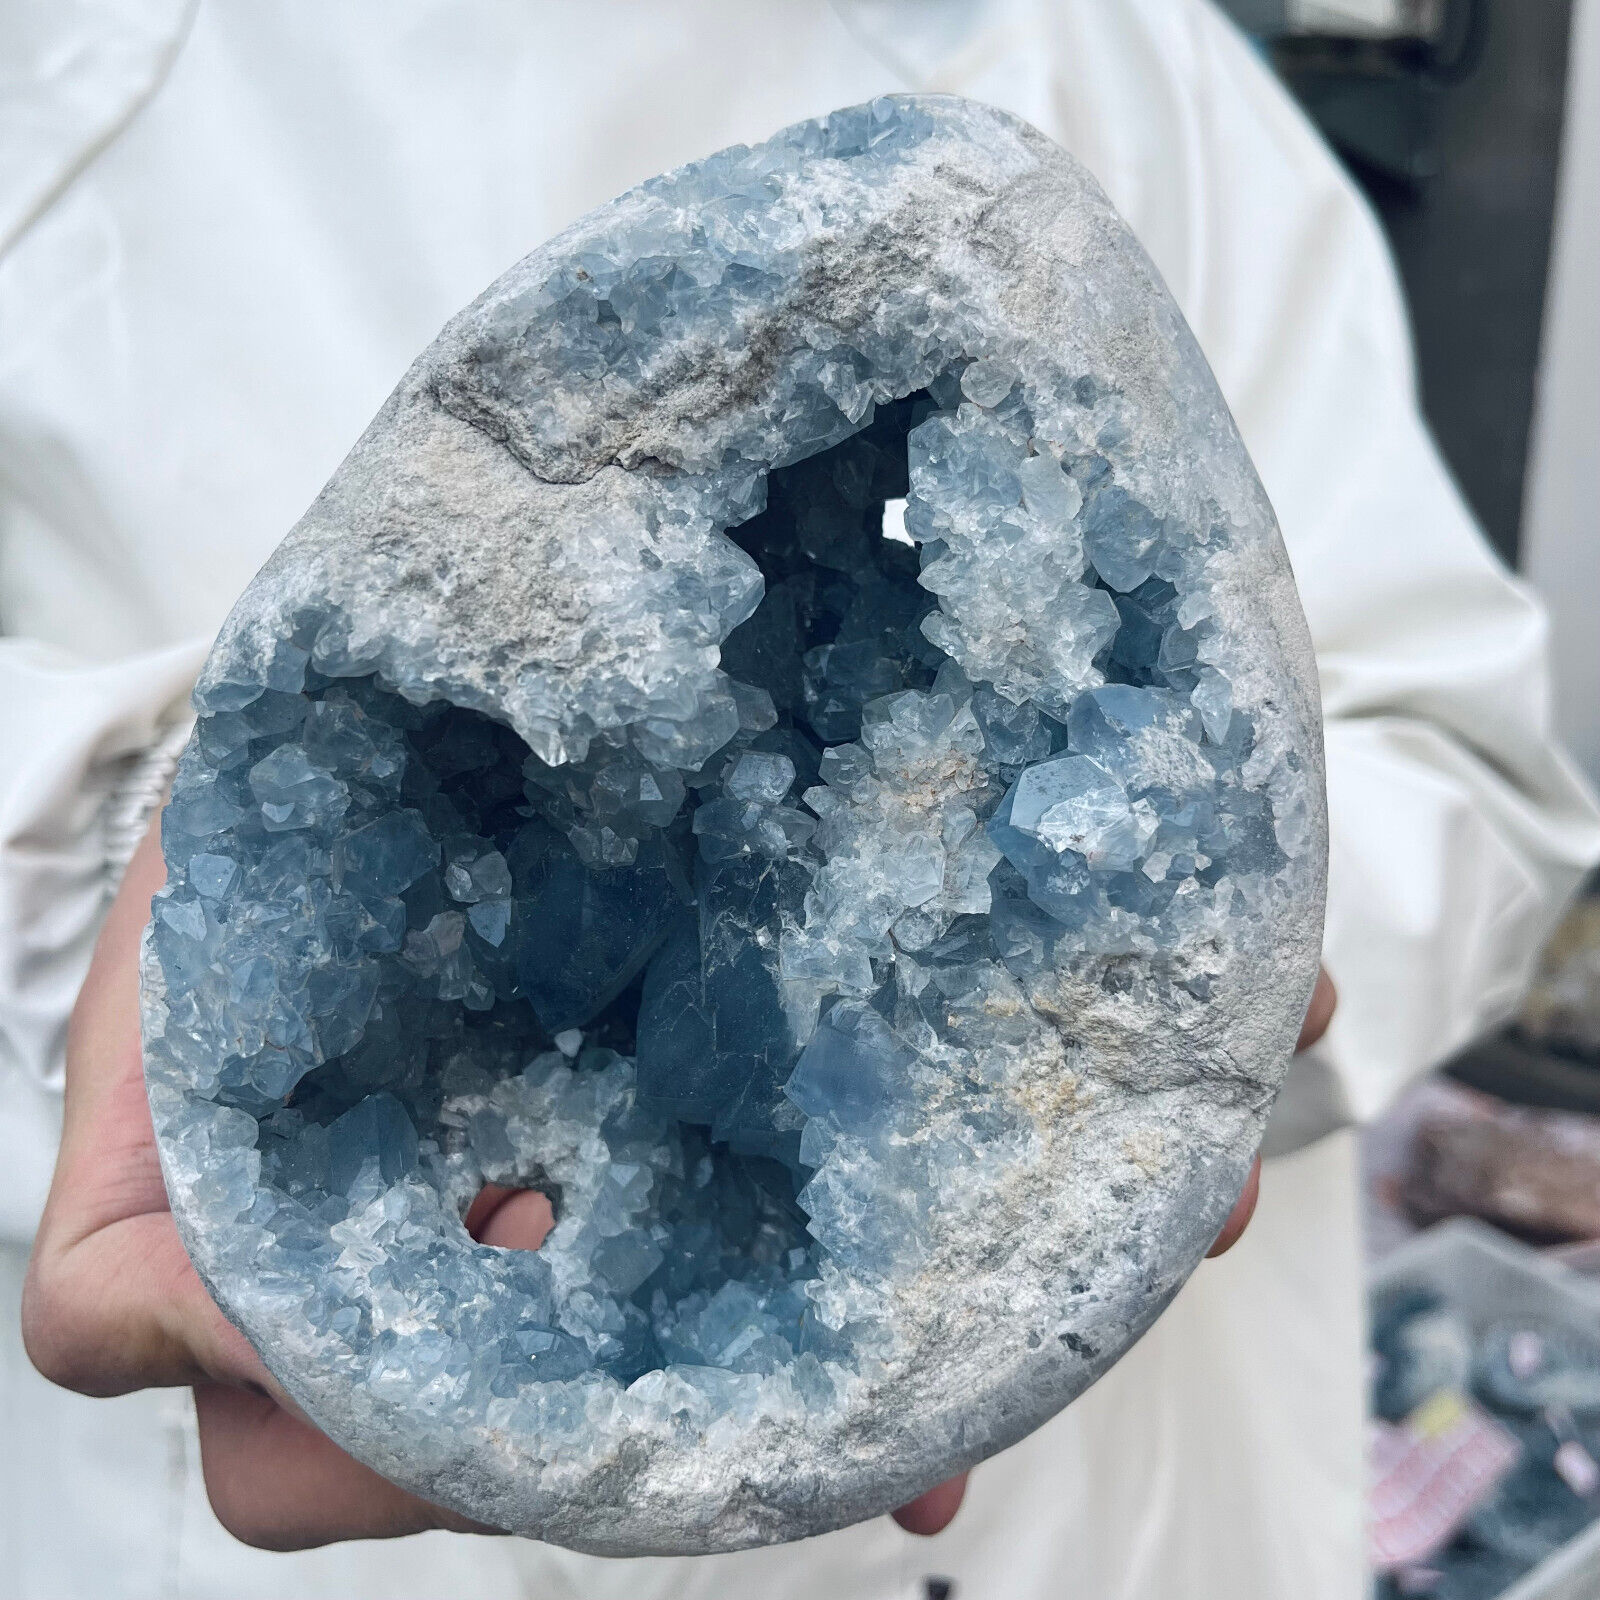 3.5lb Large Natural Blue Celestite Crystal Geode Quartz Cluster Mineral Specime